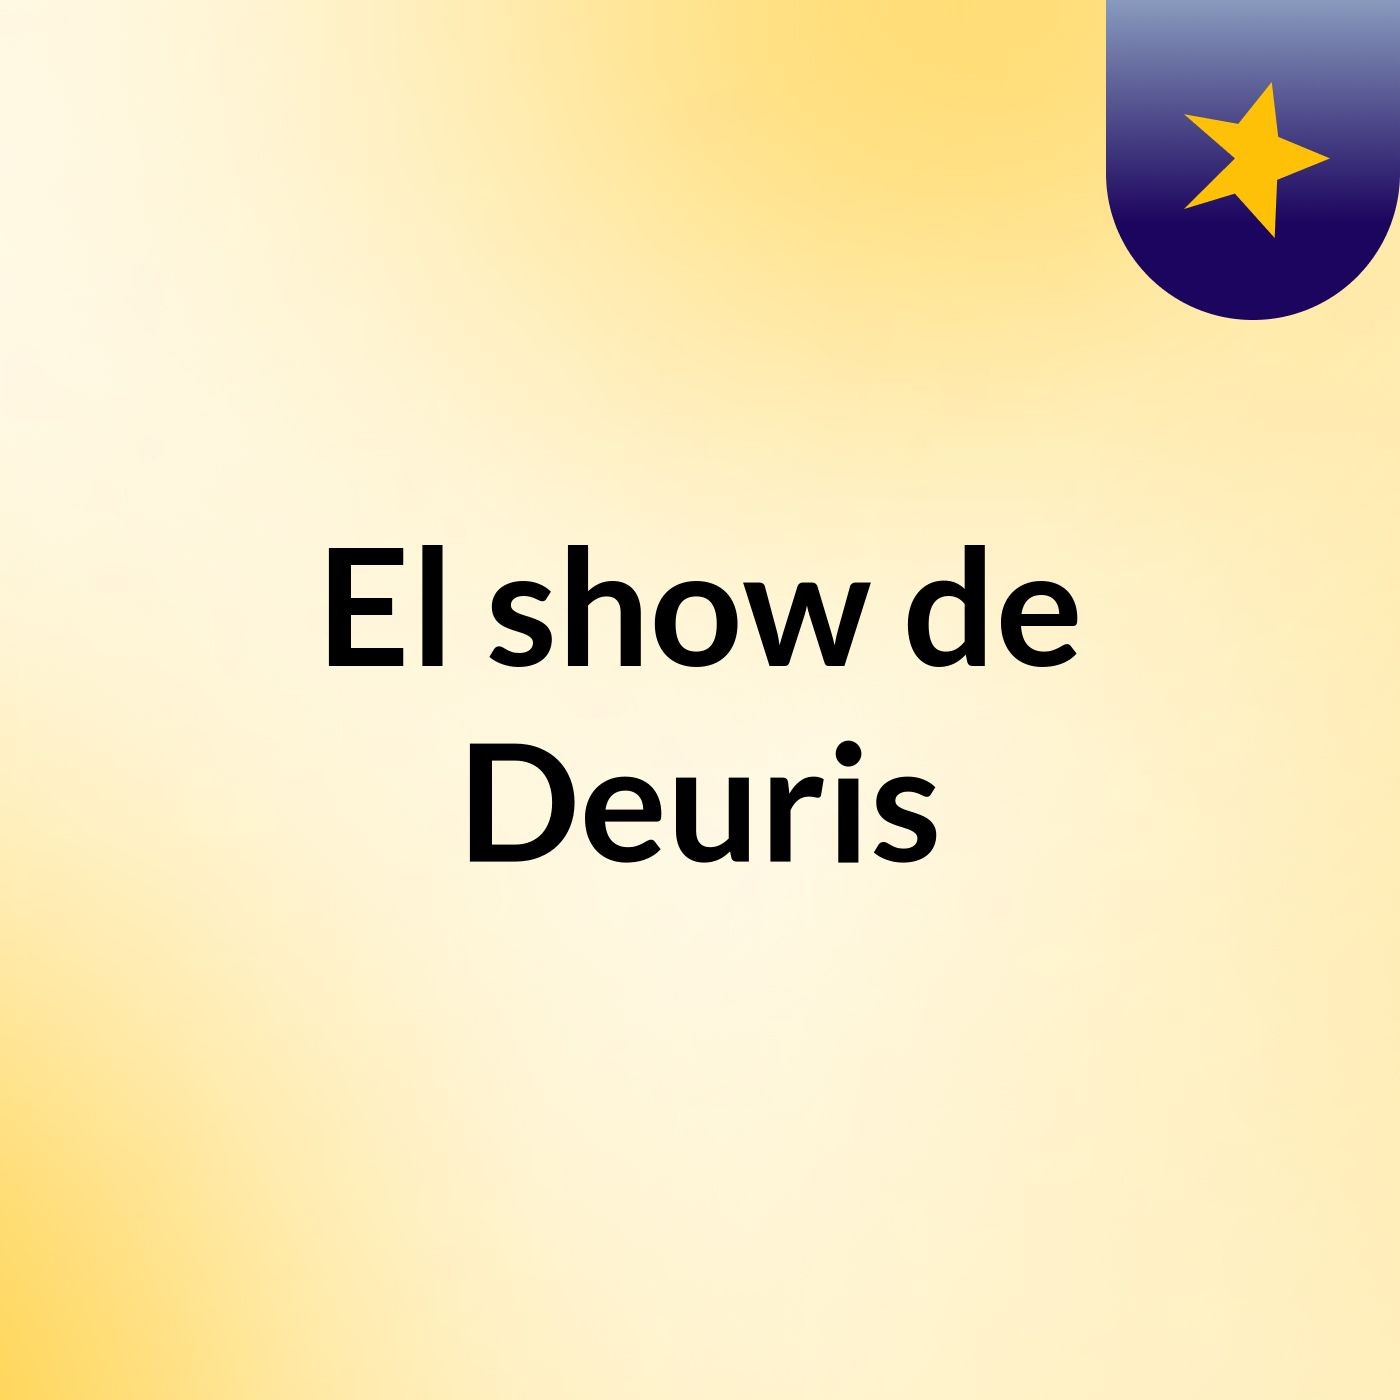 El show de Deuris